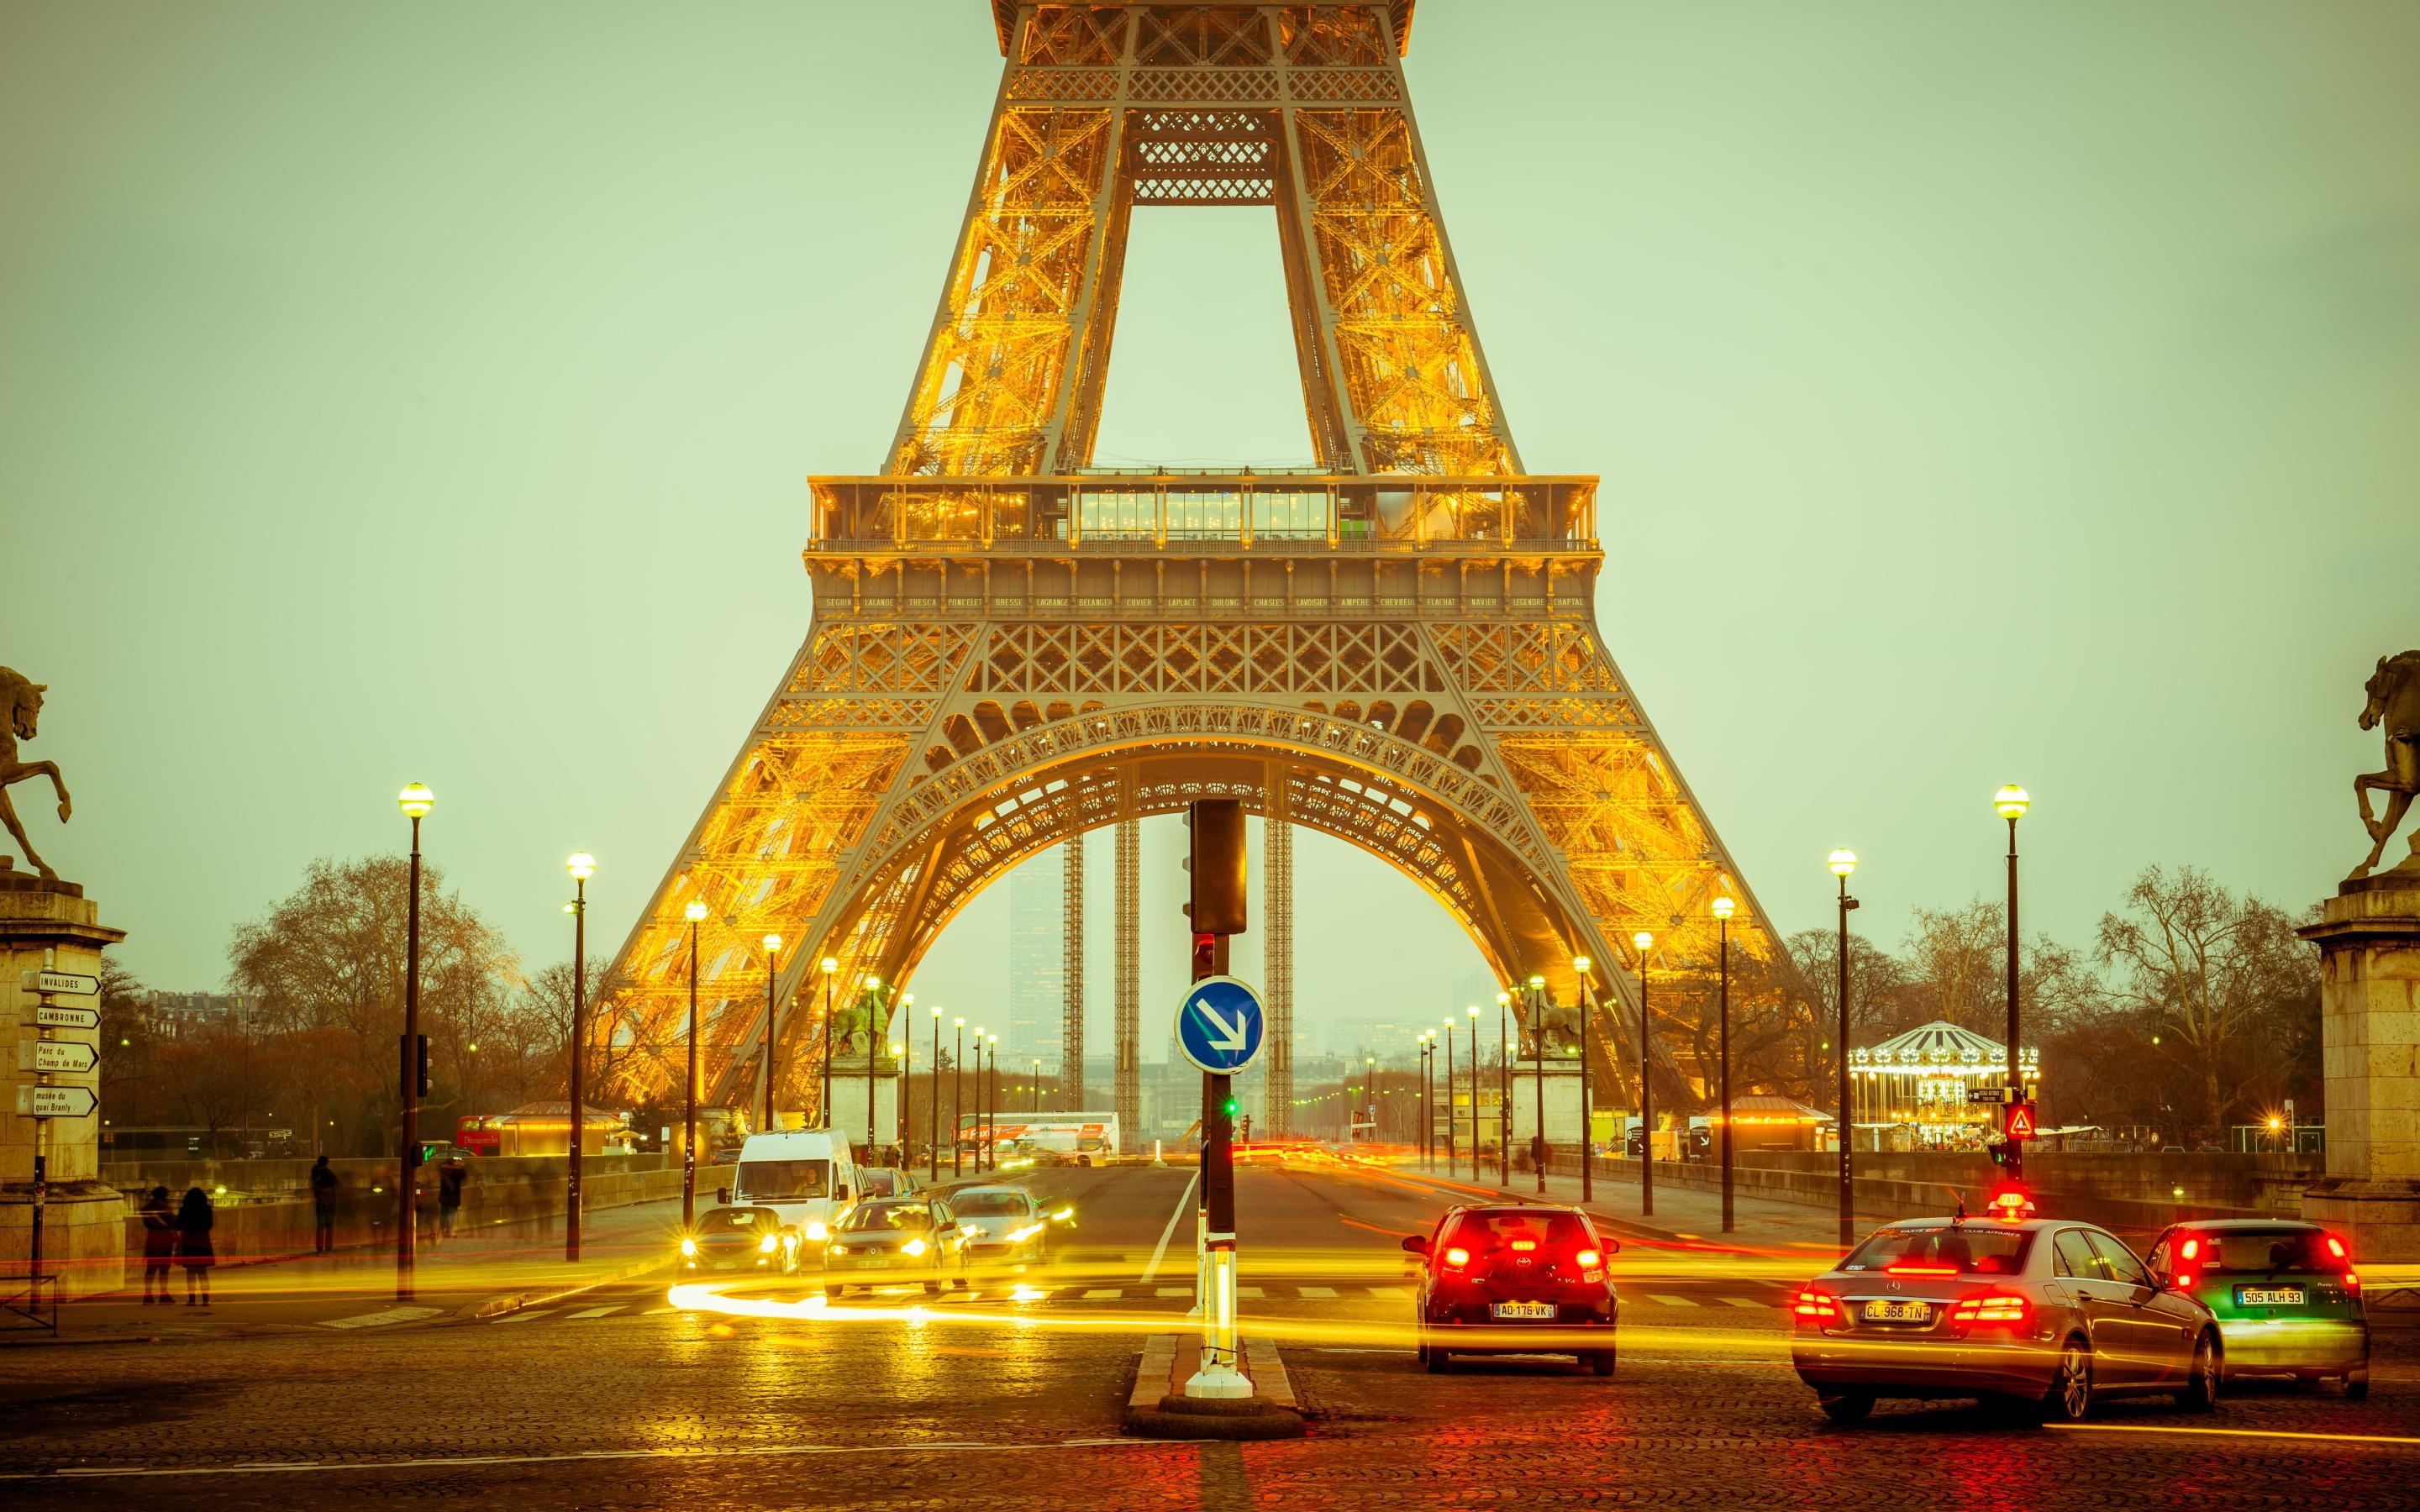 巴黎埃菲尔铁塔晚上壁纸750x1334分辨率查看